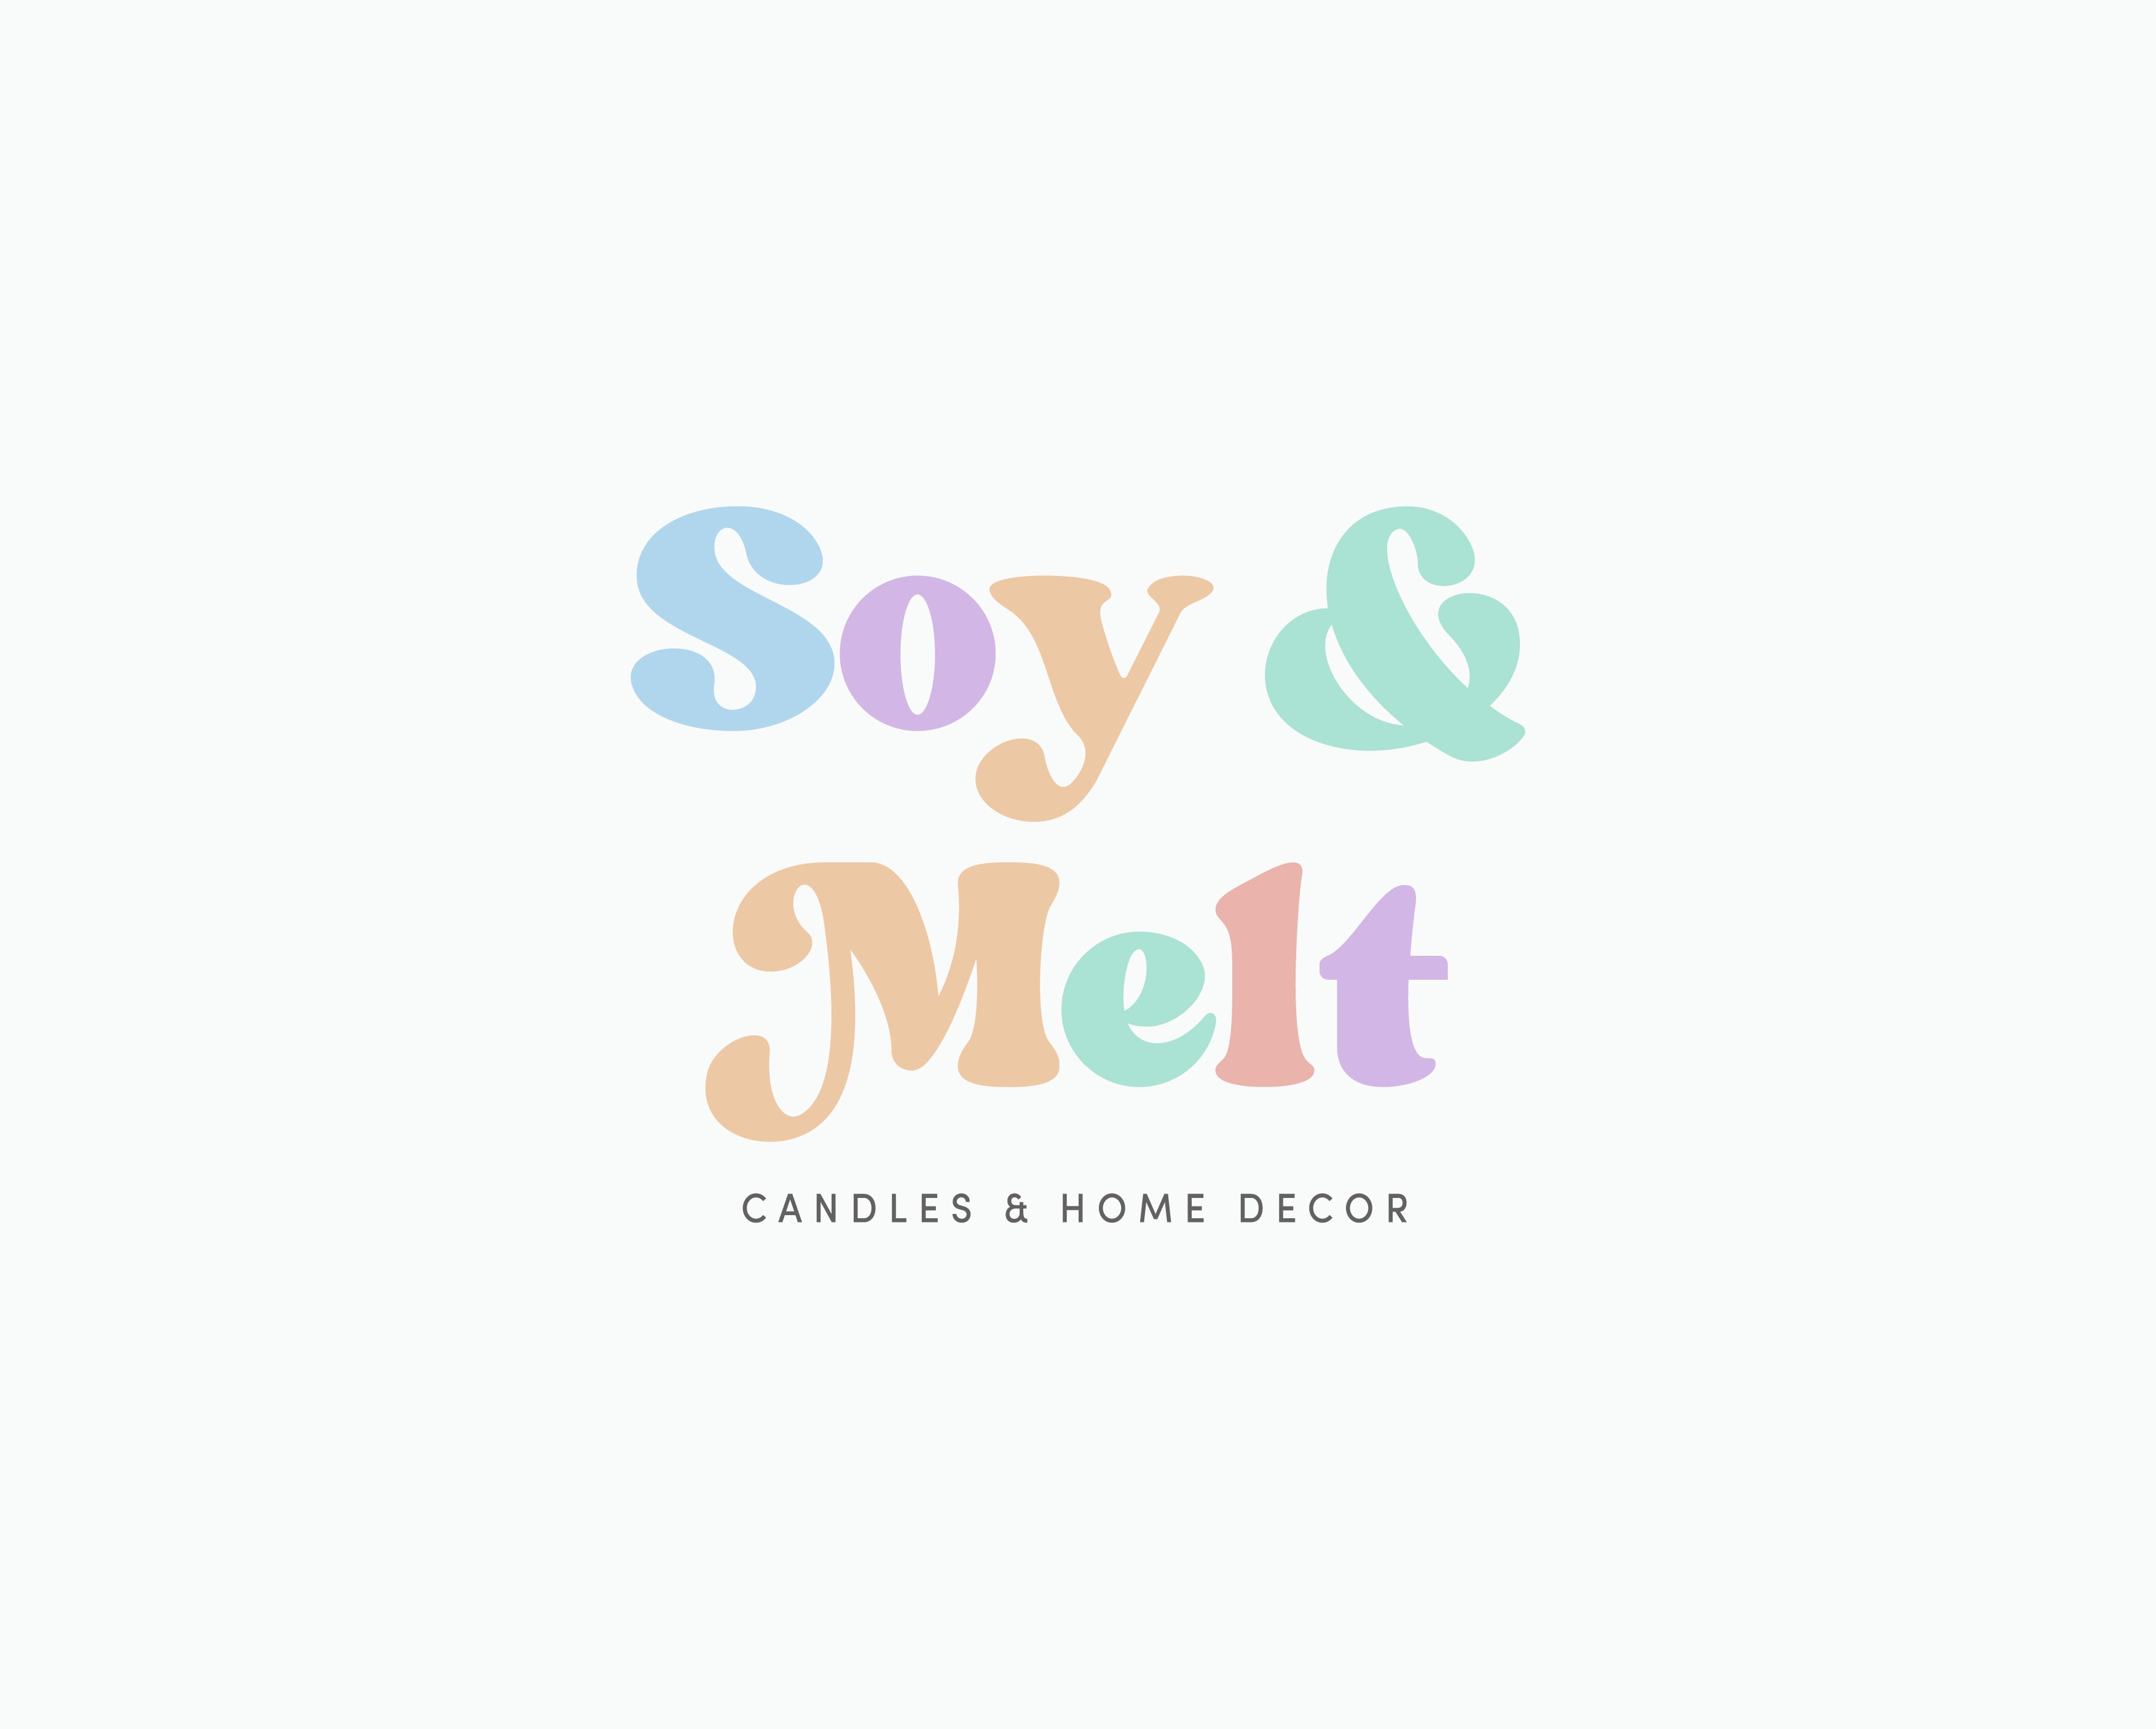 Soy & Melt